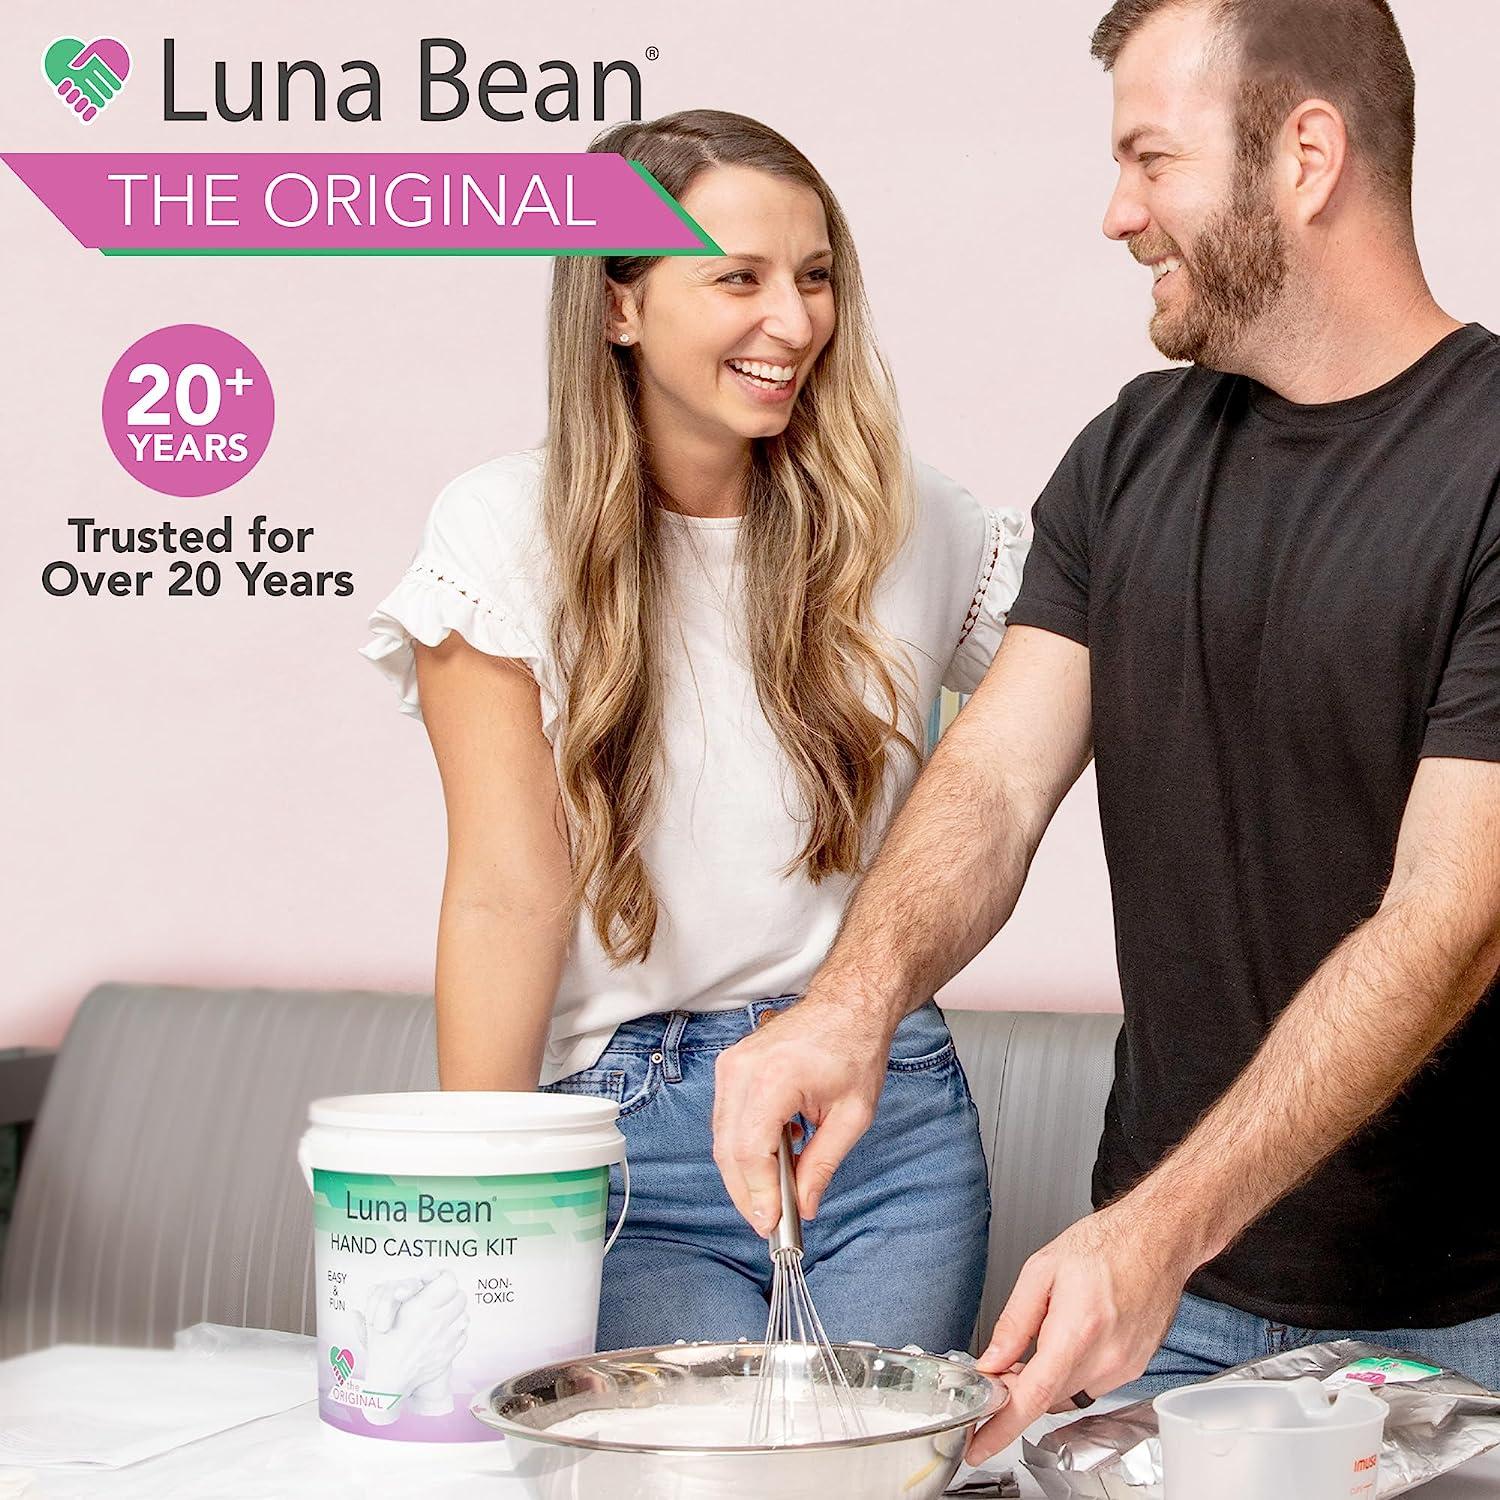 Luna Bean Keepsake Hands Casting Kit for sale online